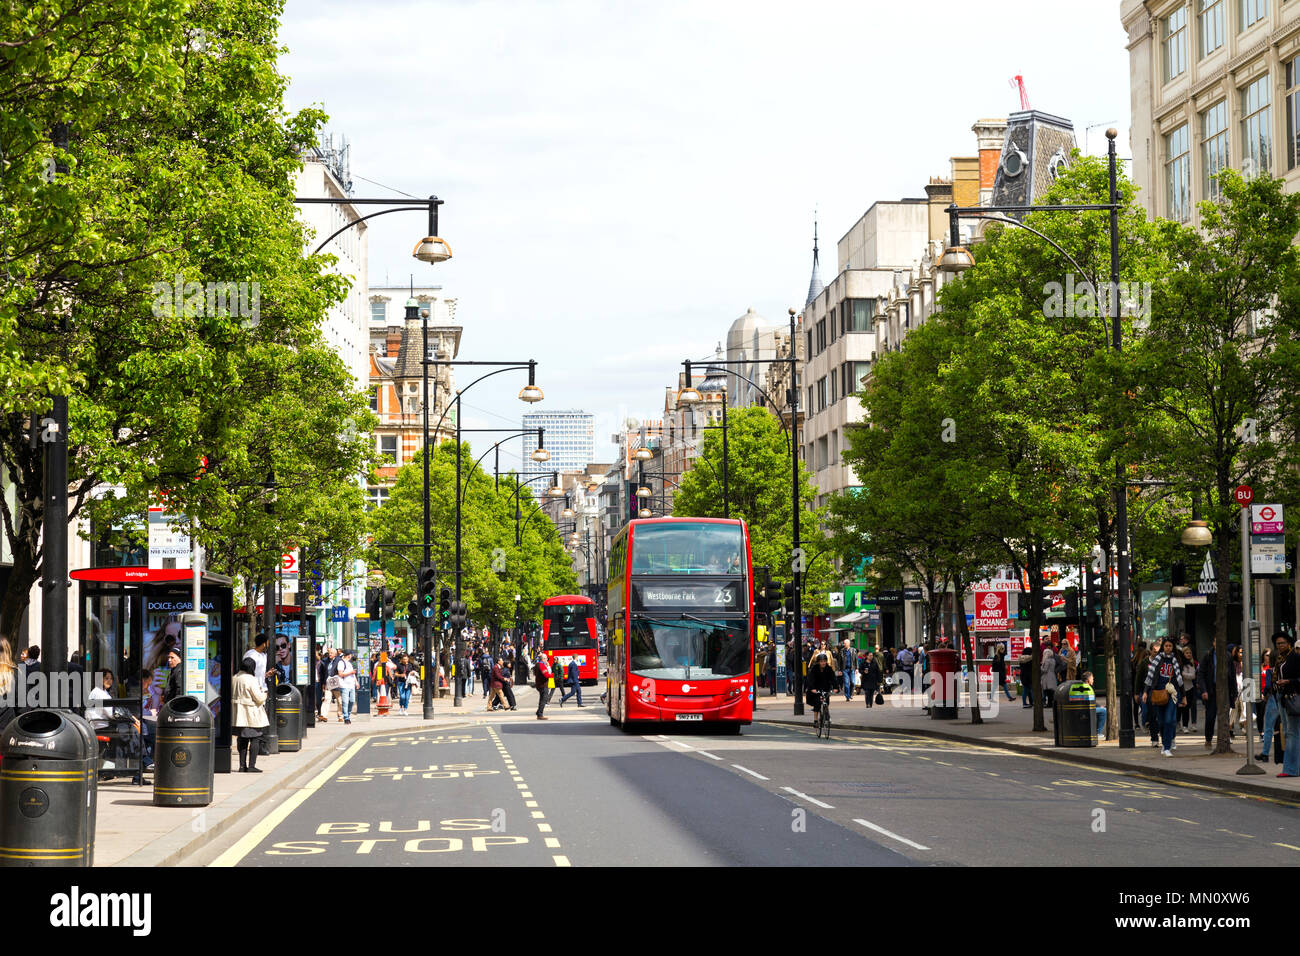 Les bus qui montent et descendent la rue commerçante animée dans le centre de Londres - Oxford Street, London, UK Banque D'Images